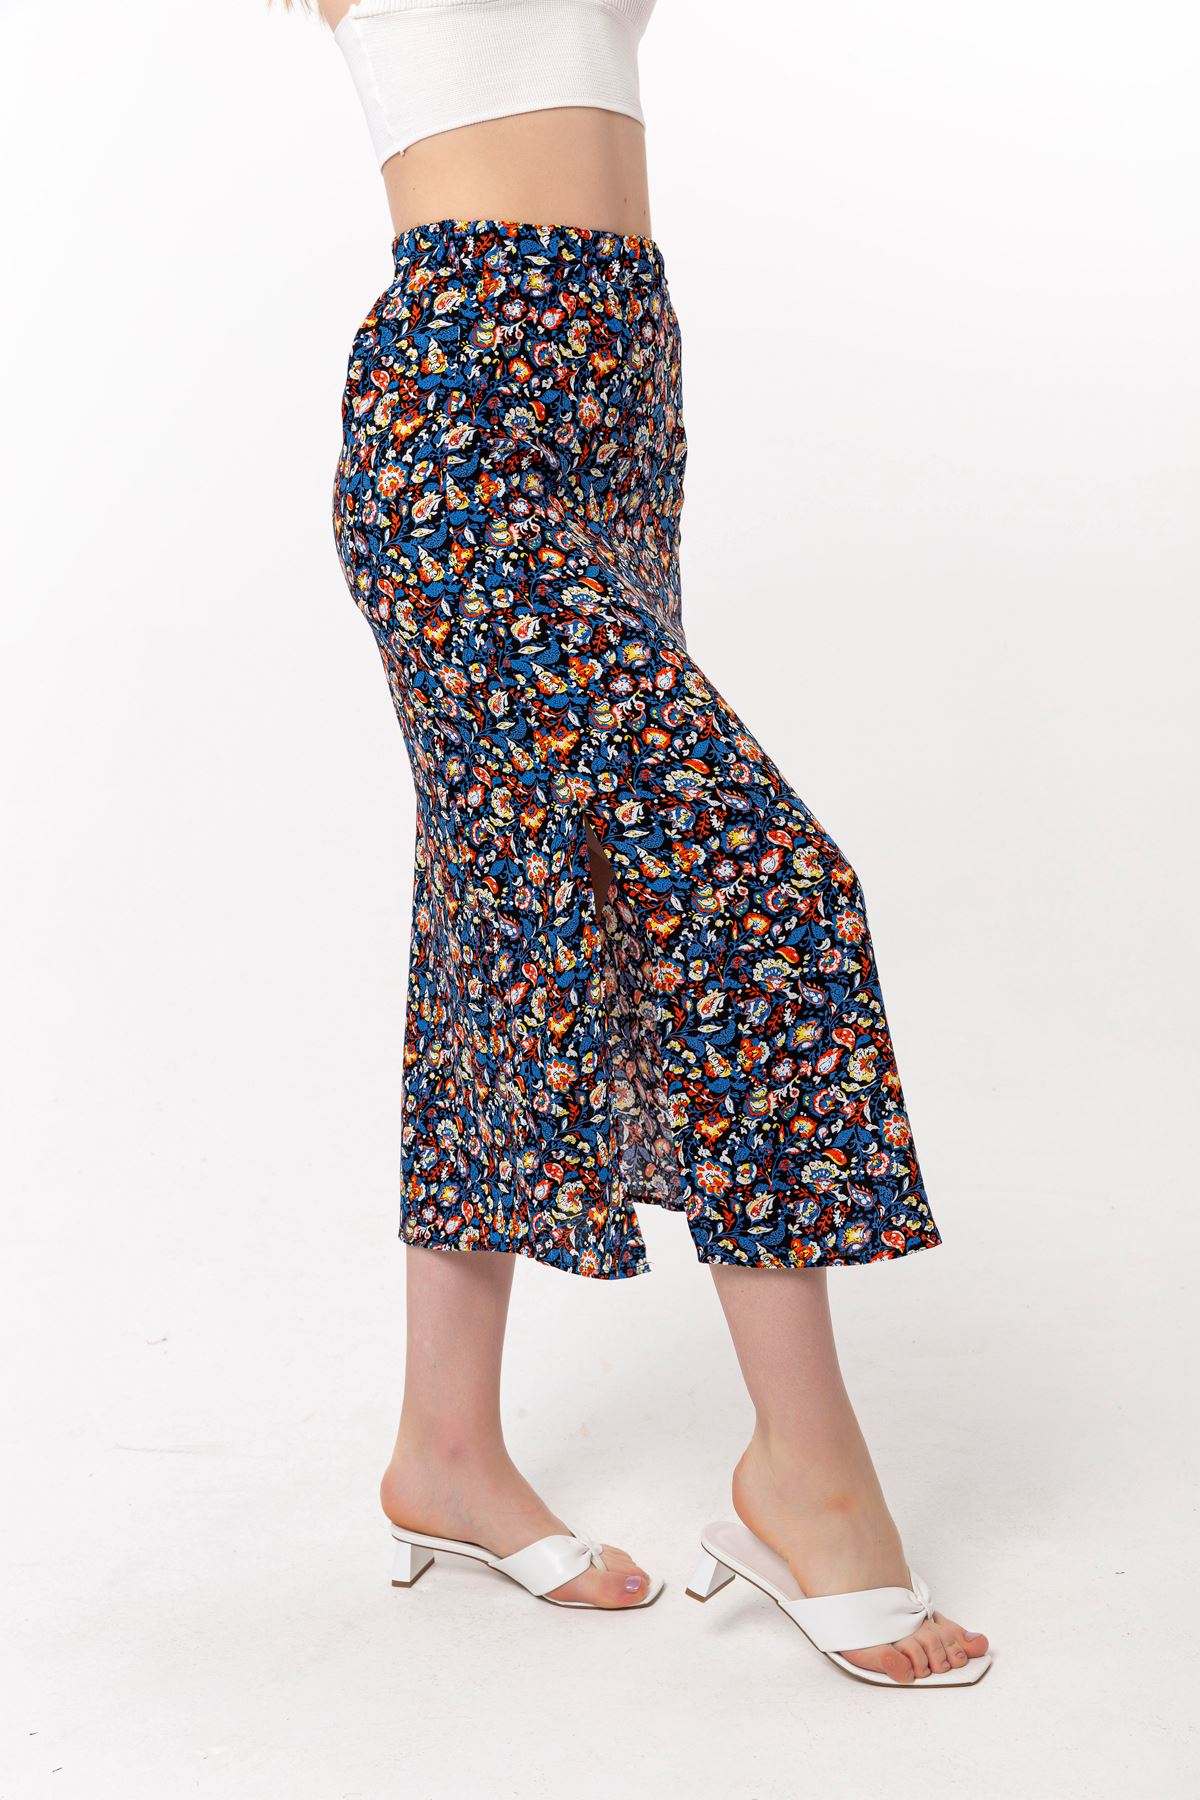 تنورة نسائية قماش استيعاب تحت الركبتين مستقيم زهرة مقرمشة - ازرق غامق